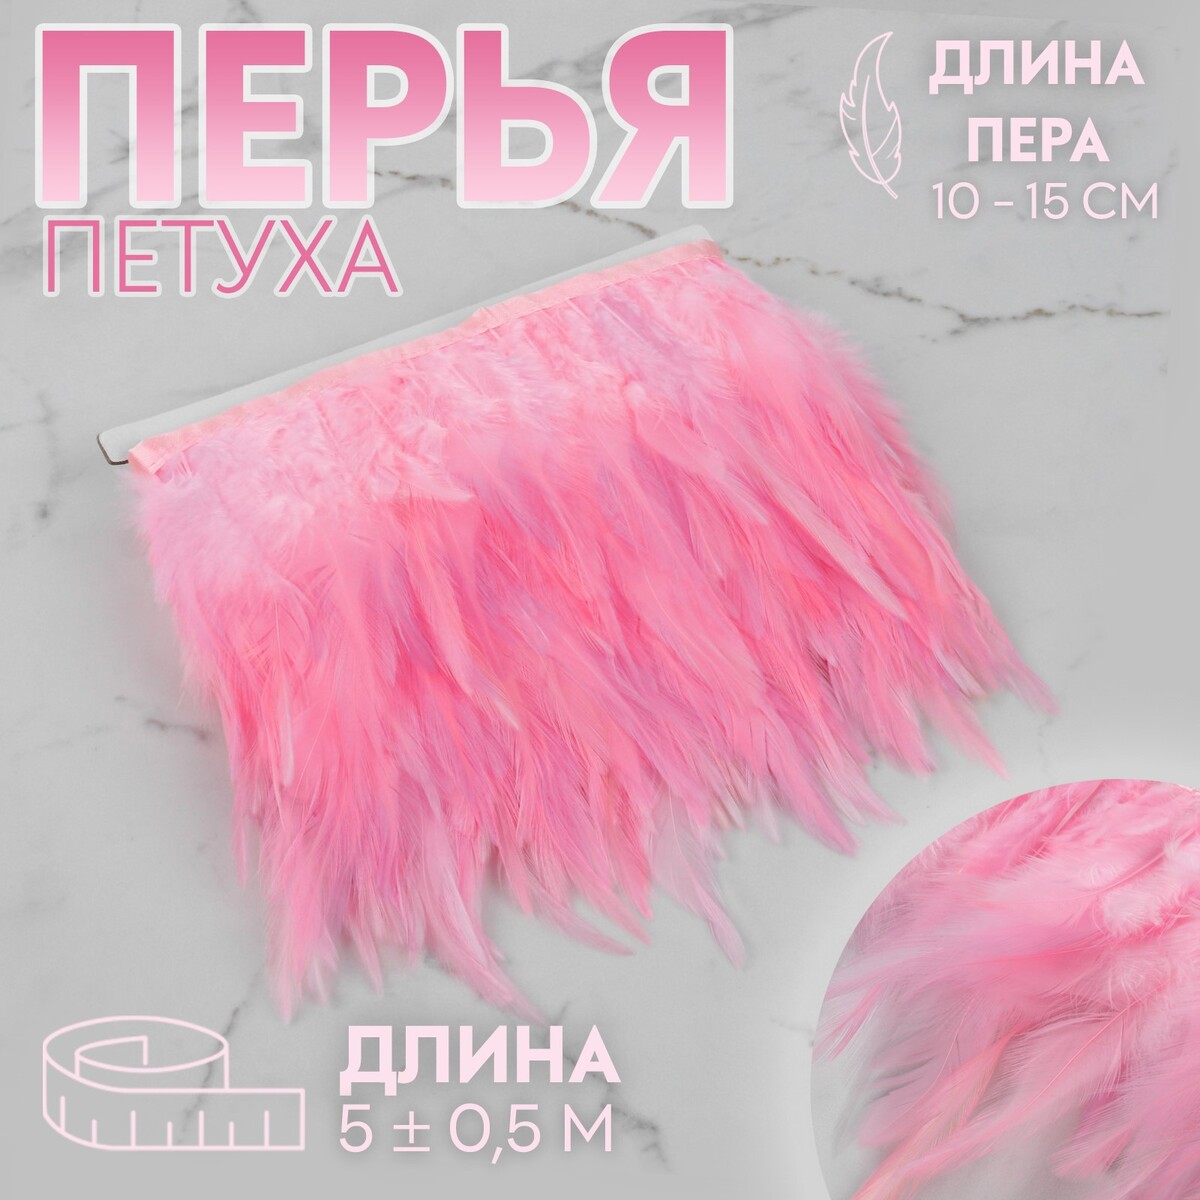 Тесьма с перьями петуха, 10-15 см, 5 ± 0,5 м, цвет розовый тесьма с перьями индюка 13 17 см 5 ± 0 5 м пудровый